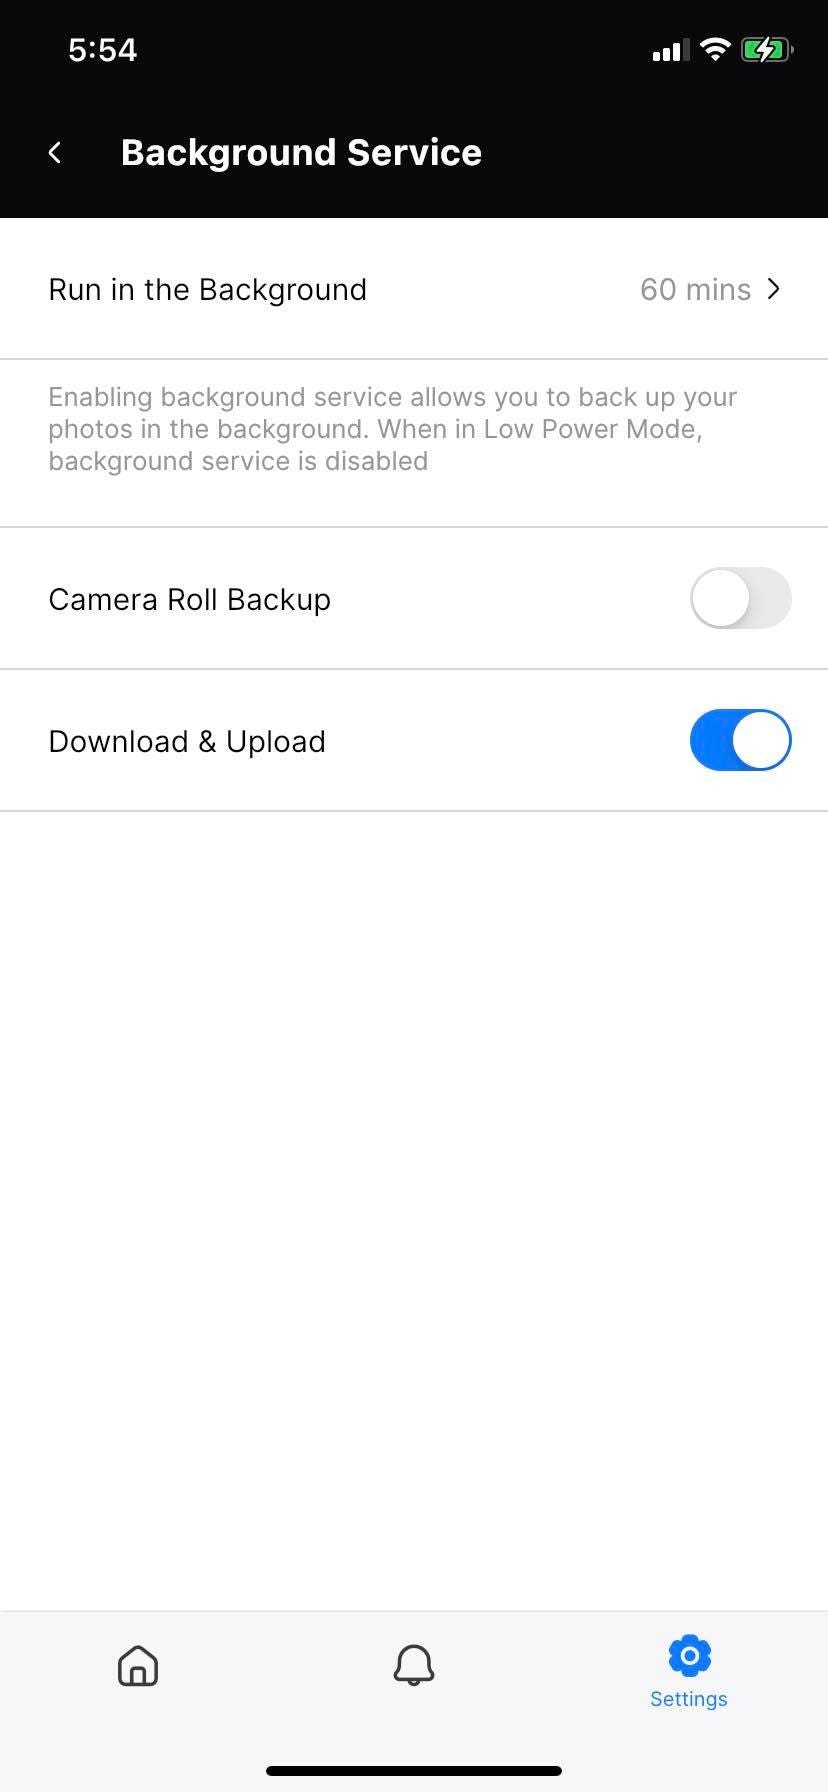 Amber iX mobile app settings screen